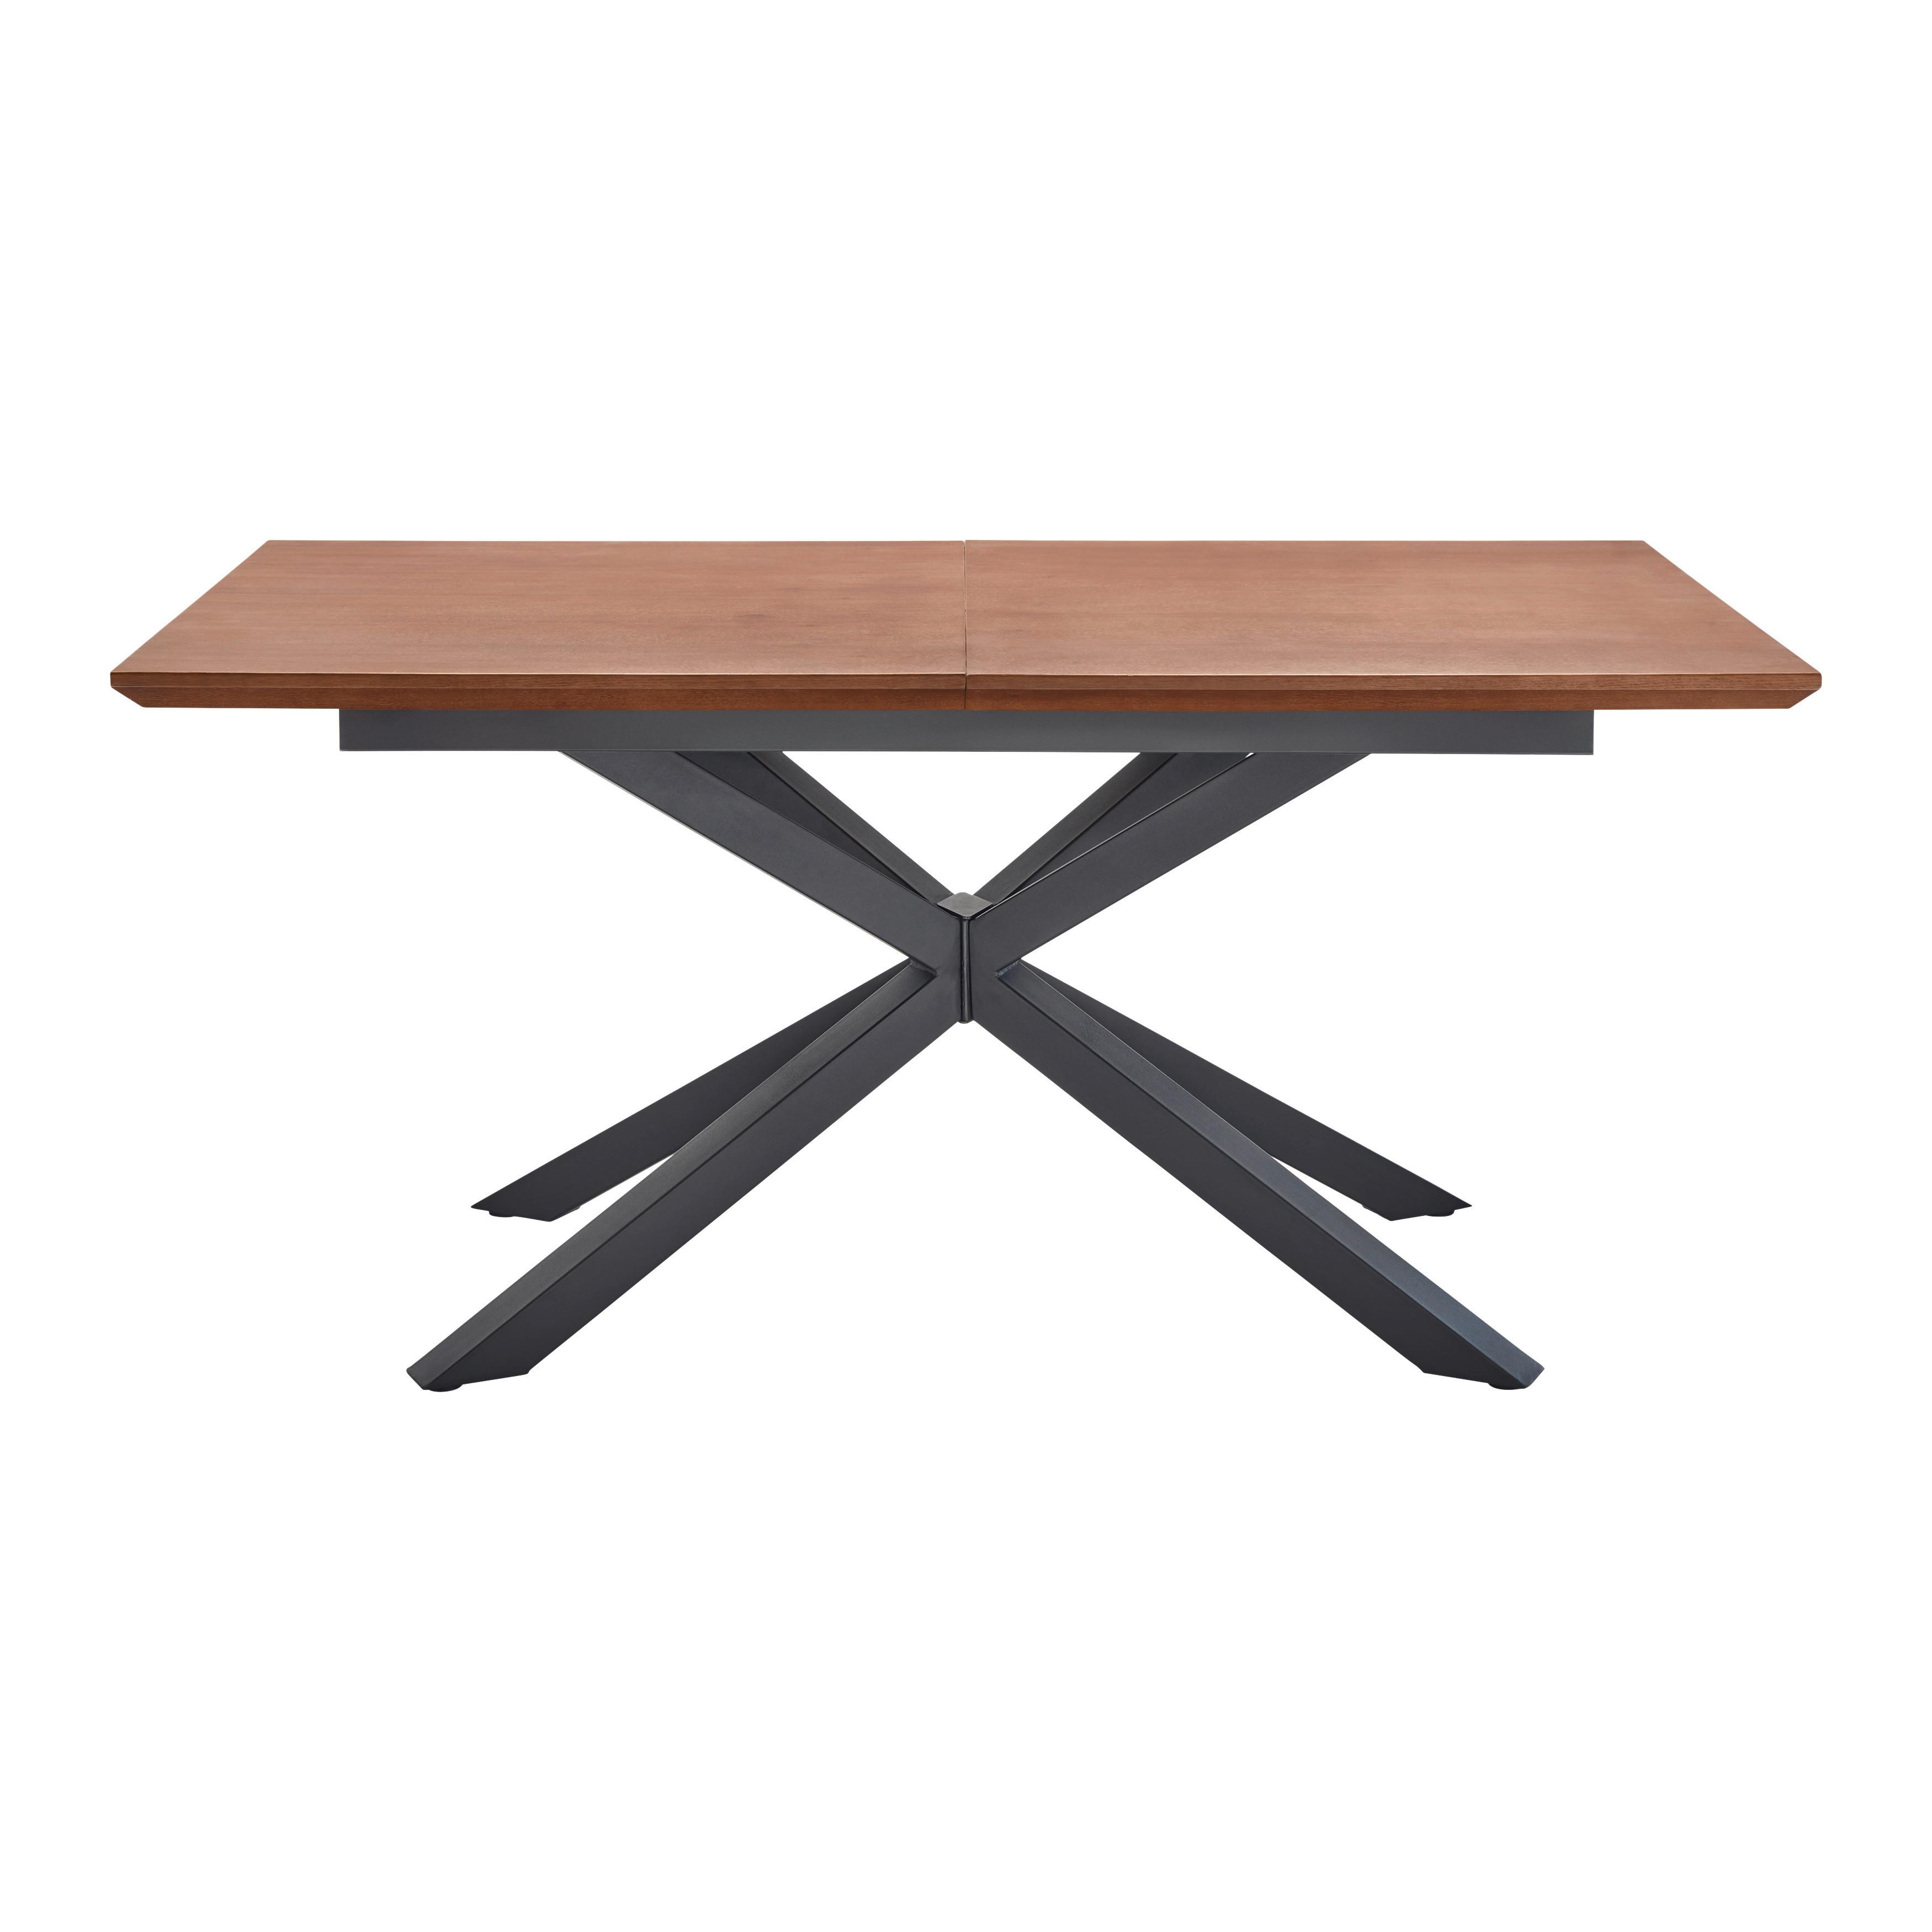 Jídelní Stůl S Rozkladem Fulvio 160-200 Cm - černá/barvy vlašských ořechů, Moderní, kov/dřevo (160-200/90/77cm) - P & B